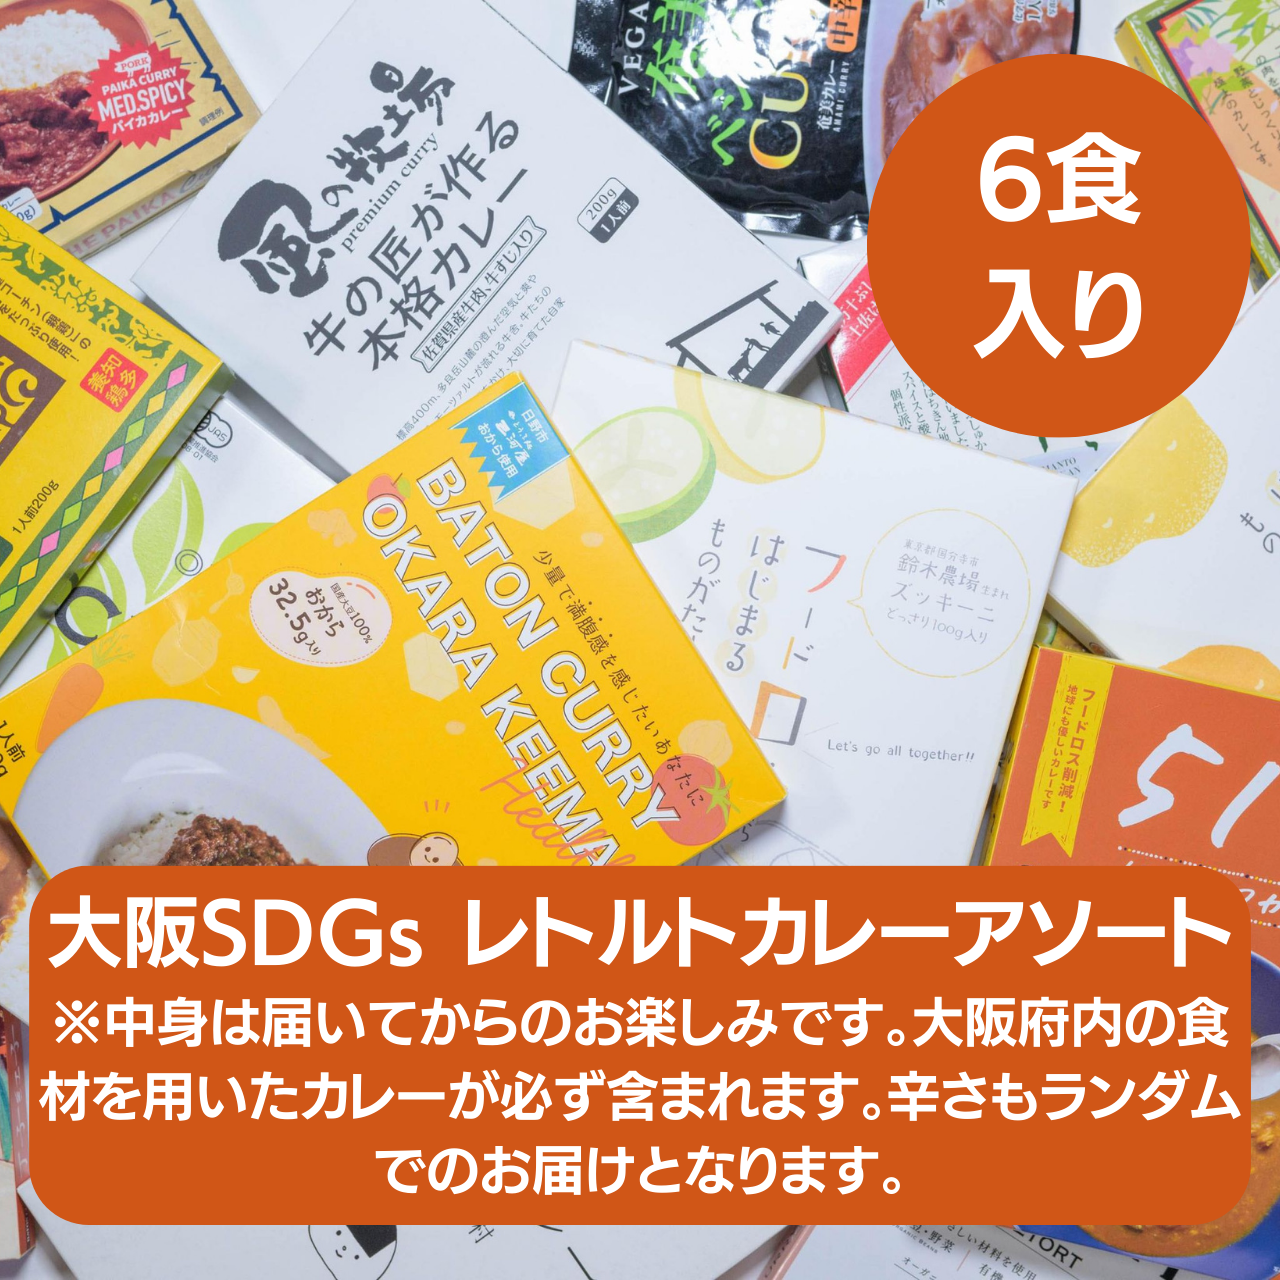 大阪SDGs レトルトカレーアソート6食入り